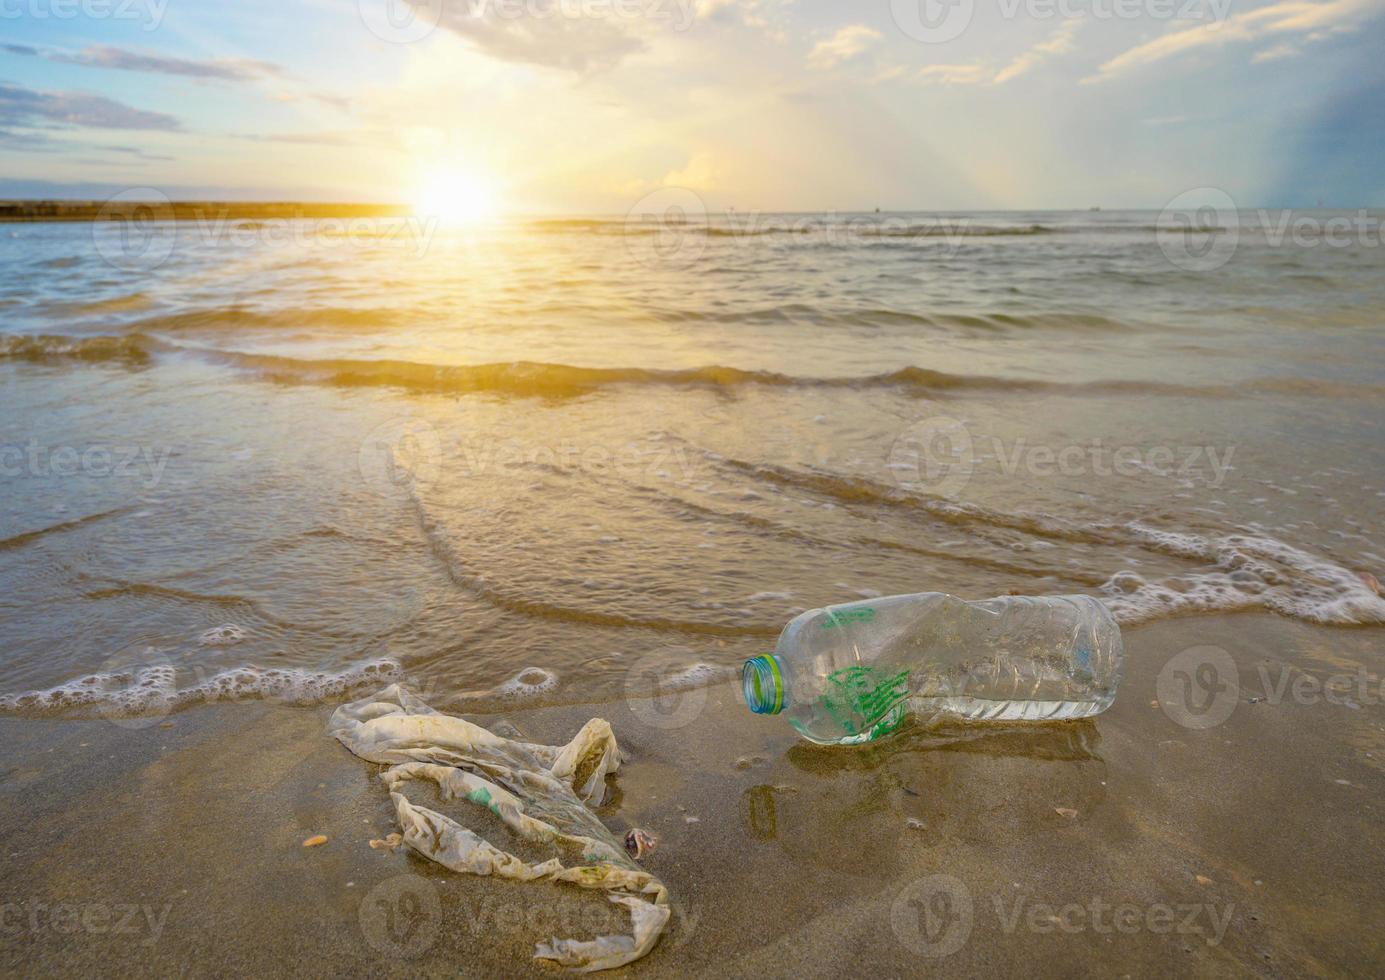 spazzatura la bottiglia di plastica del mare della spiaggia si trova sulla spiaggia e inquina il mare e la vita della vita marina ha versato immondizia sulla spiaggia della grande città. bottiglie di plastica sporche usate vuote foto